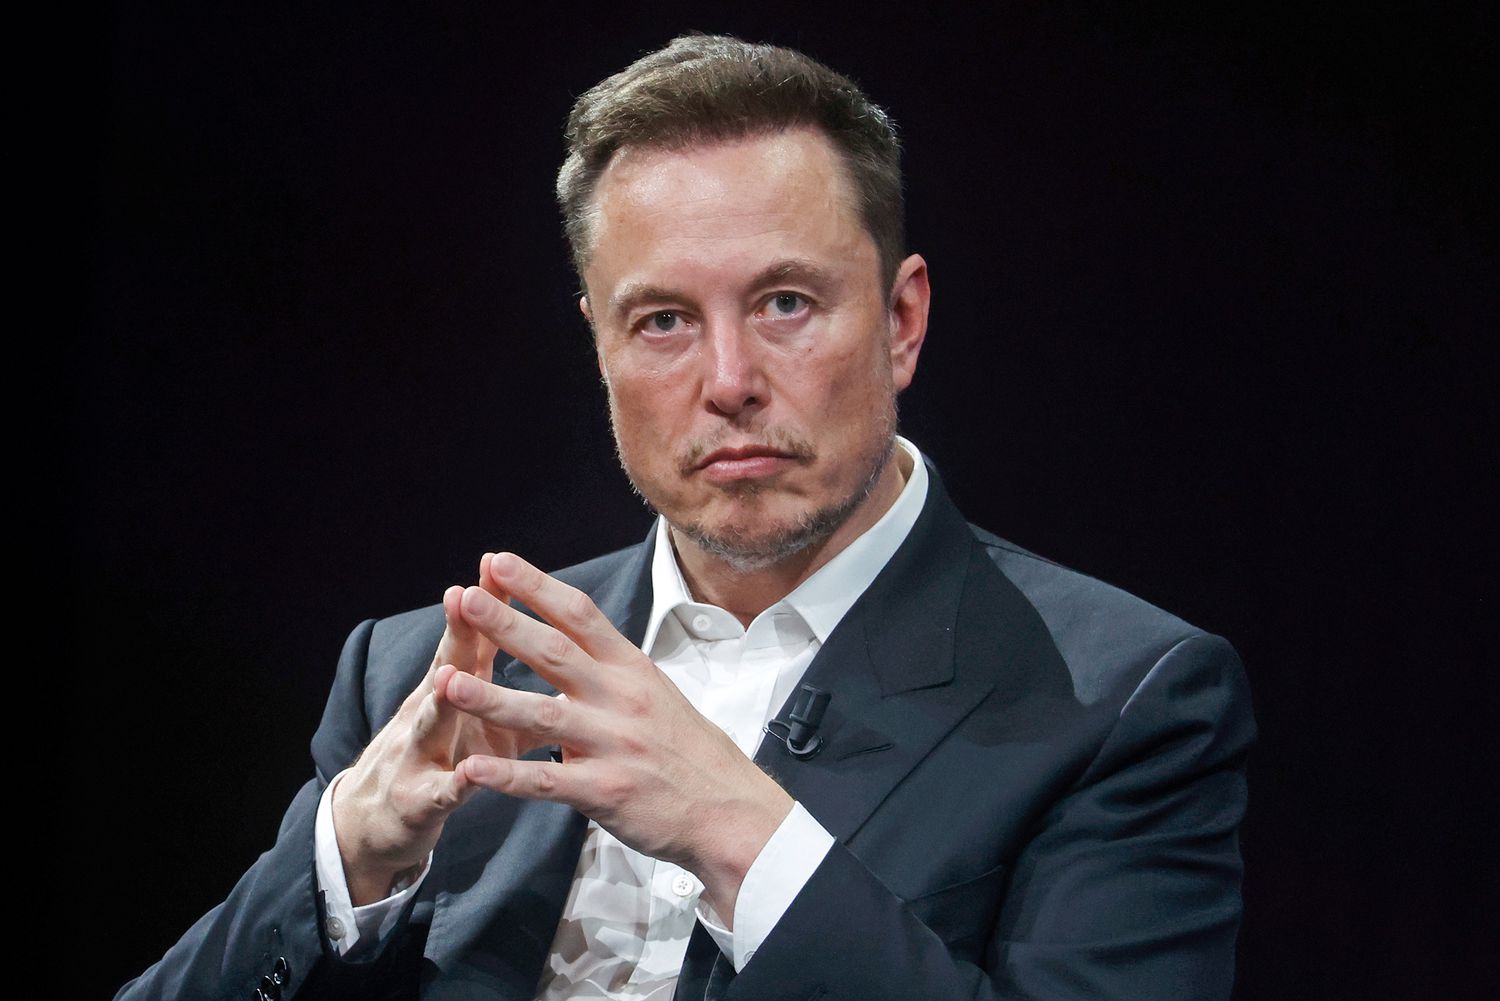 Pertama Didunia! Perusahaan Startup Elon Musk Neuralink Tanamkan Chip ke Otak Manusia